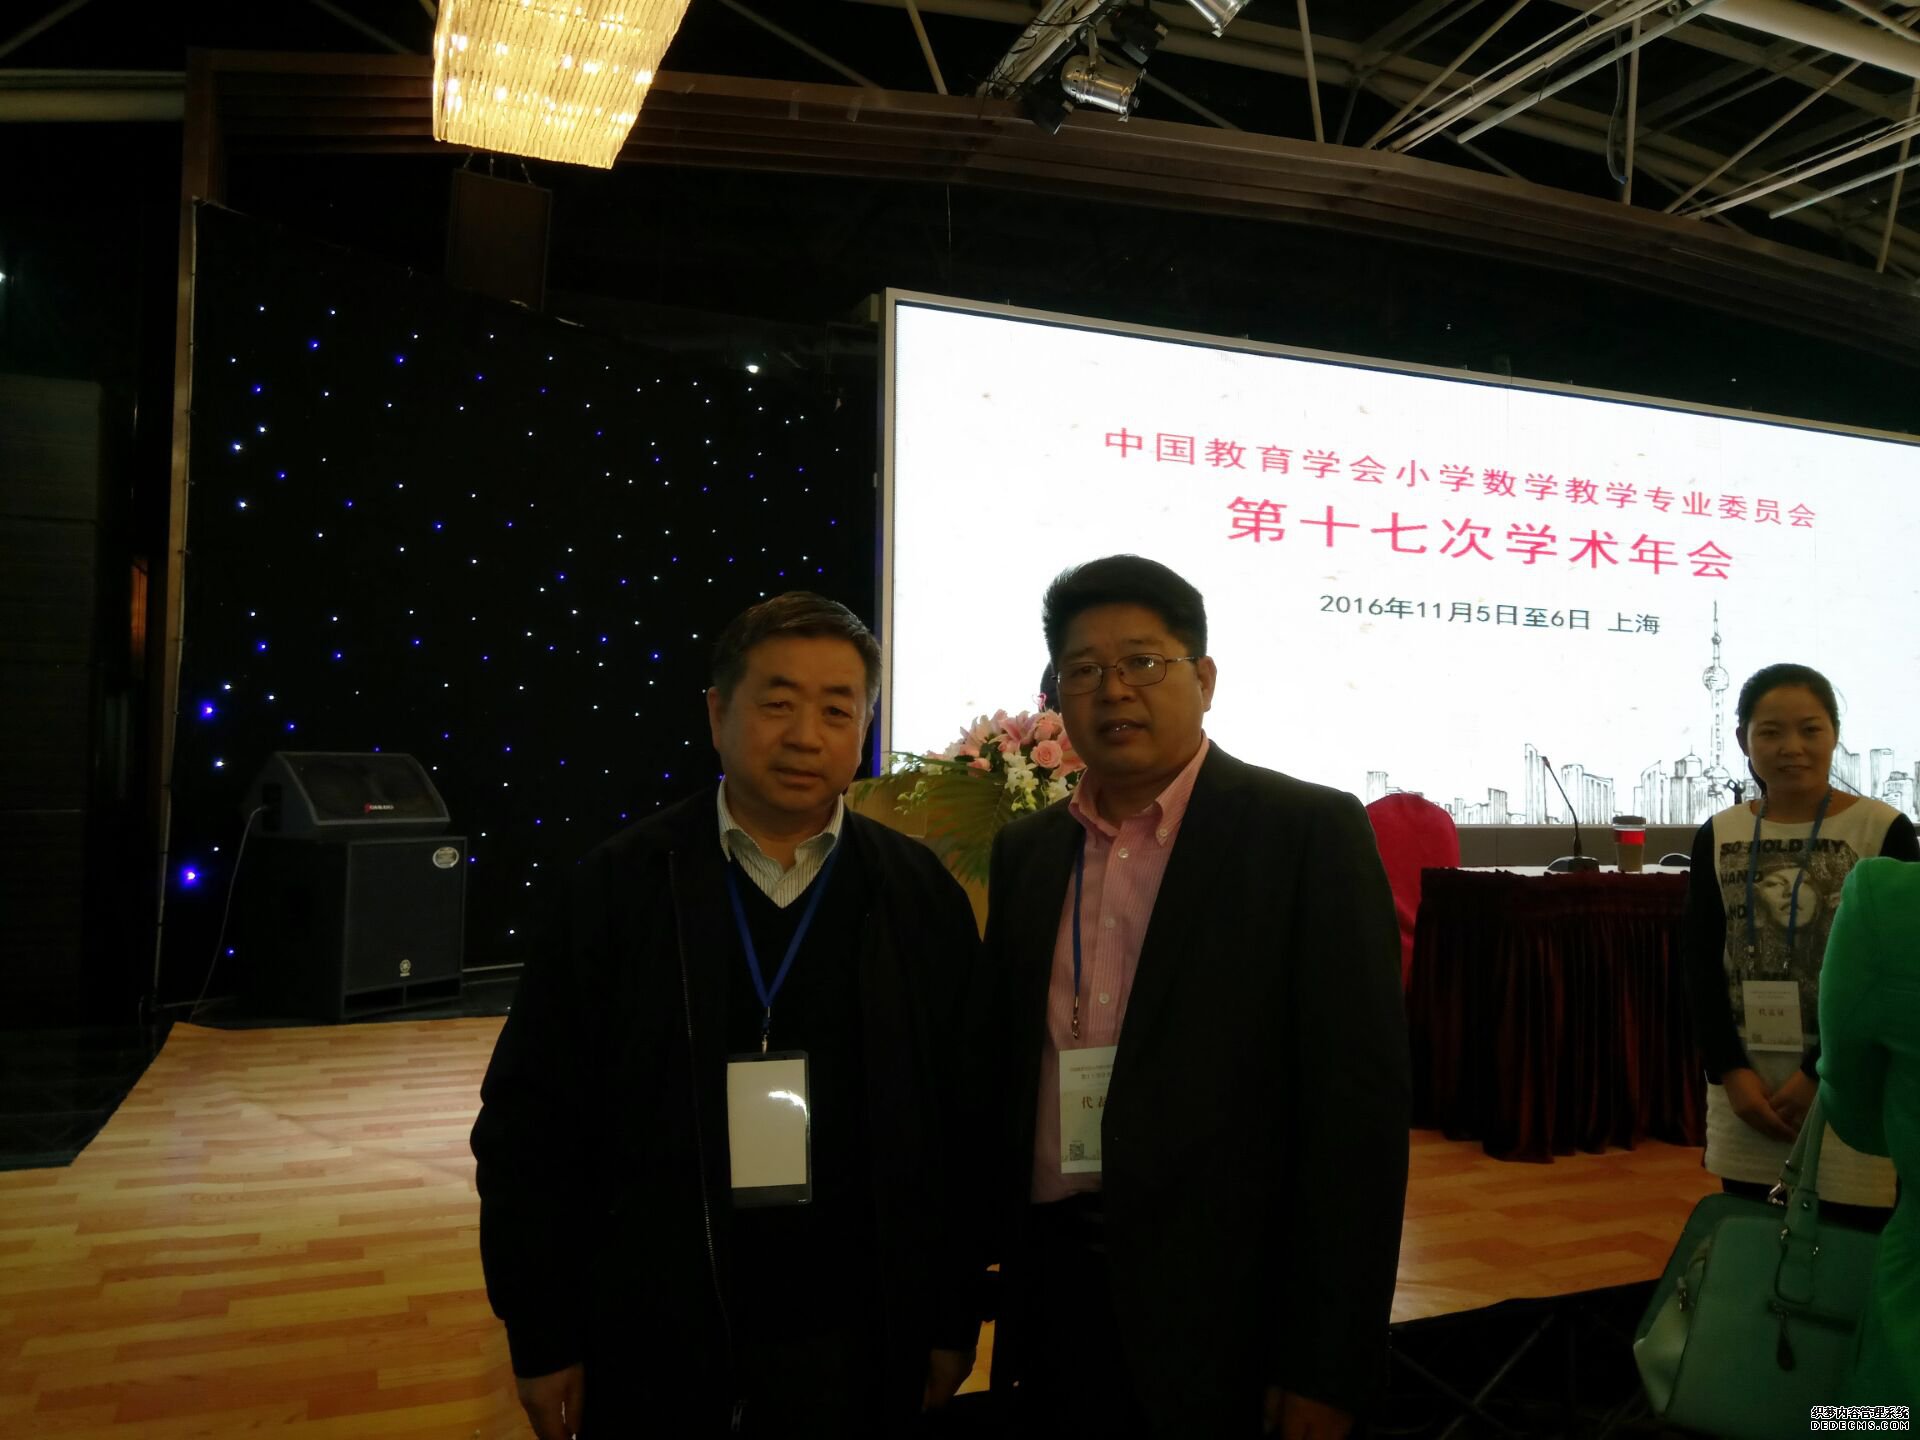 象数文化受邀参加中国教育学会小学数学教学专业委员会第十七次学术年会